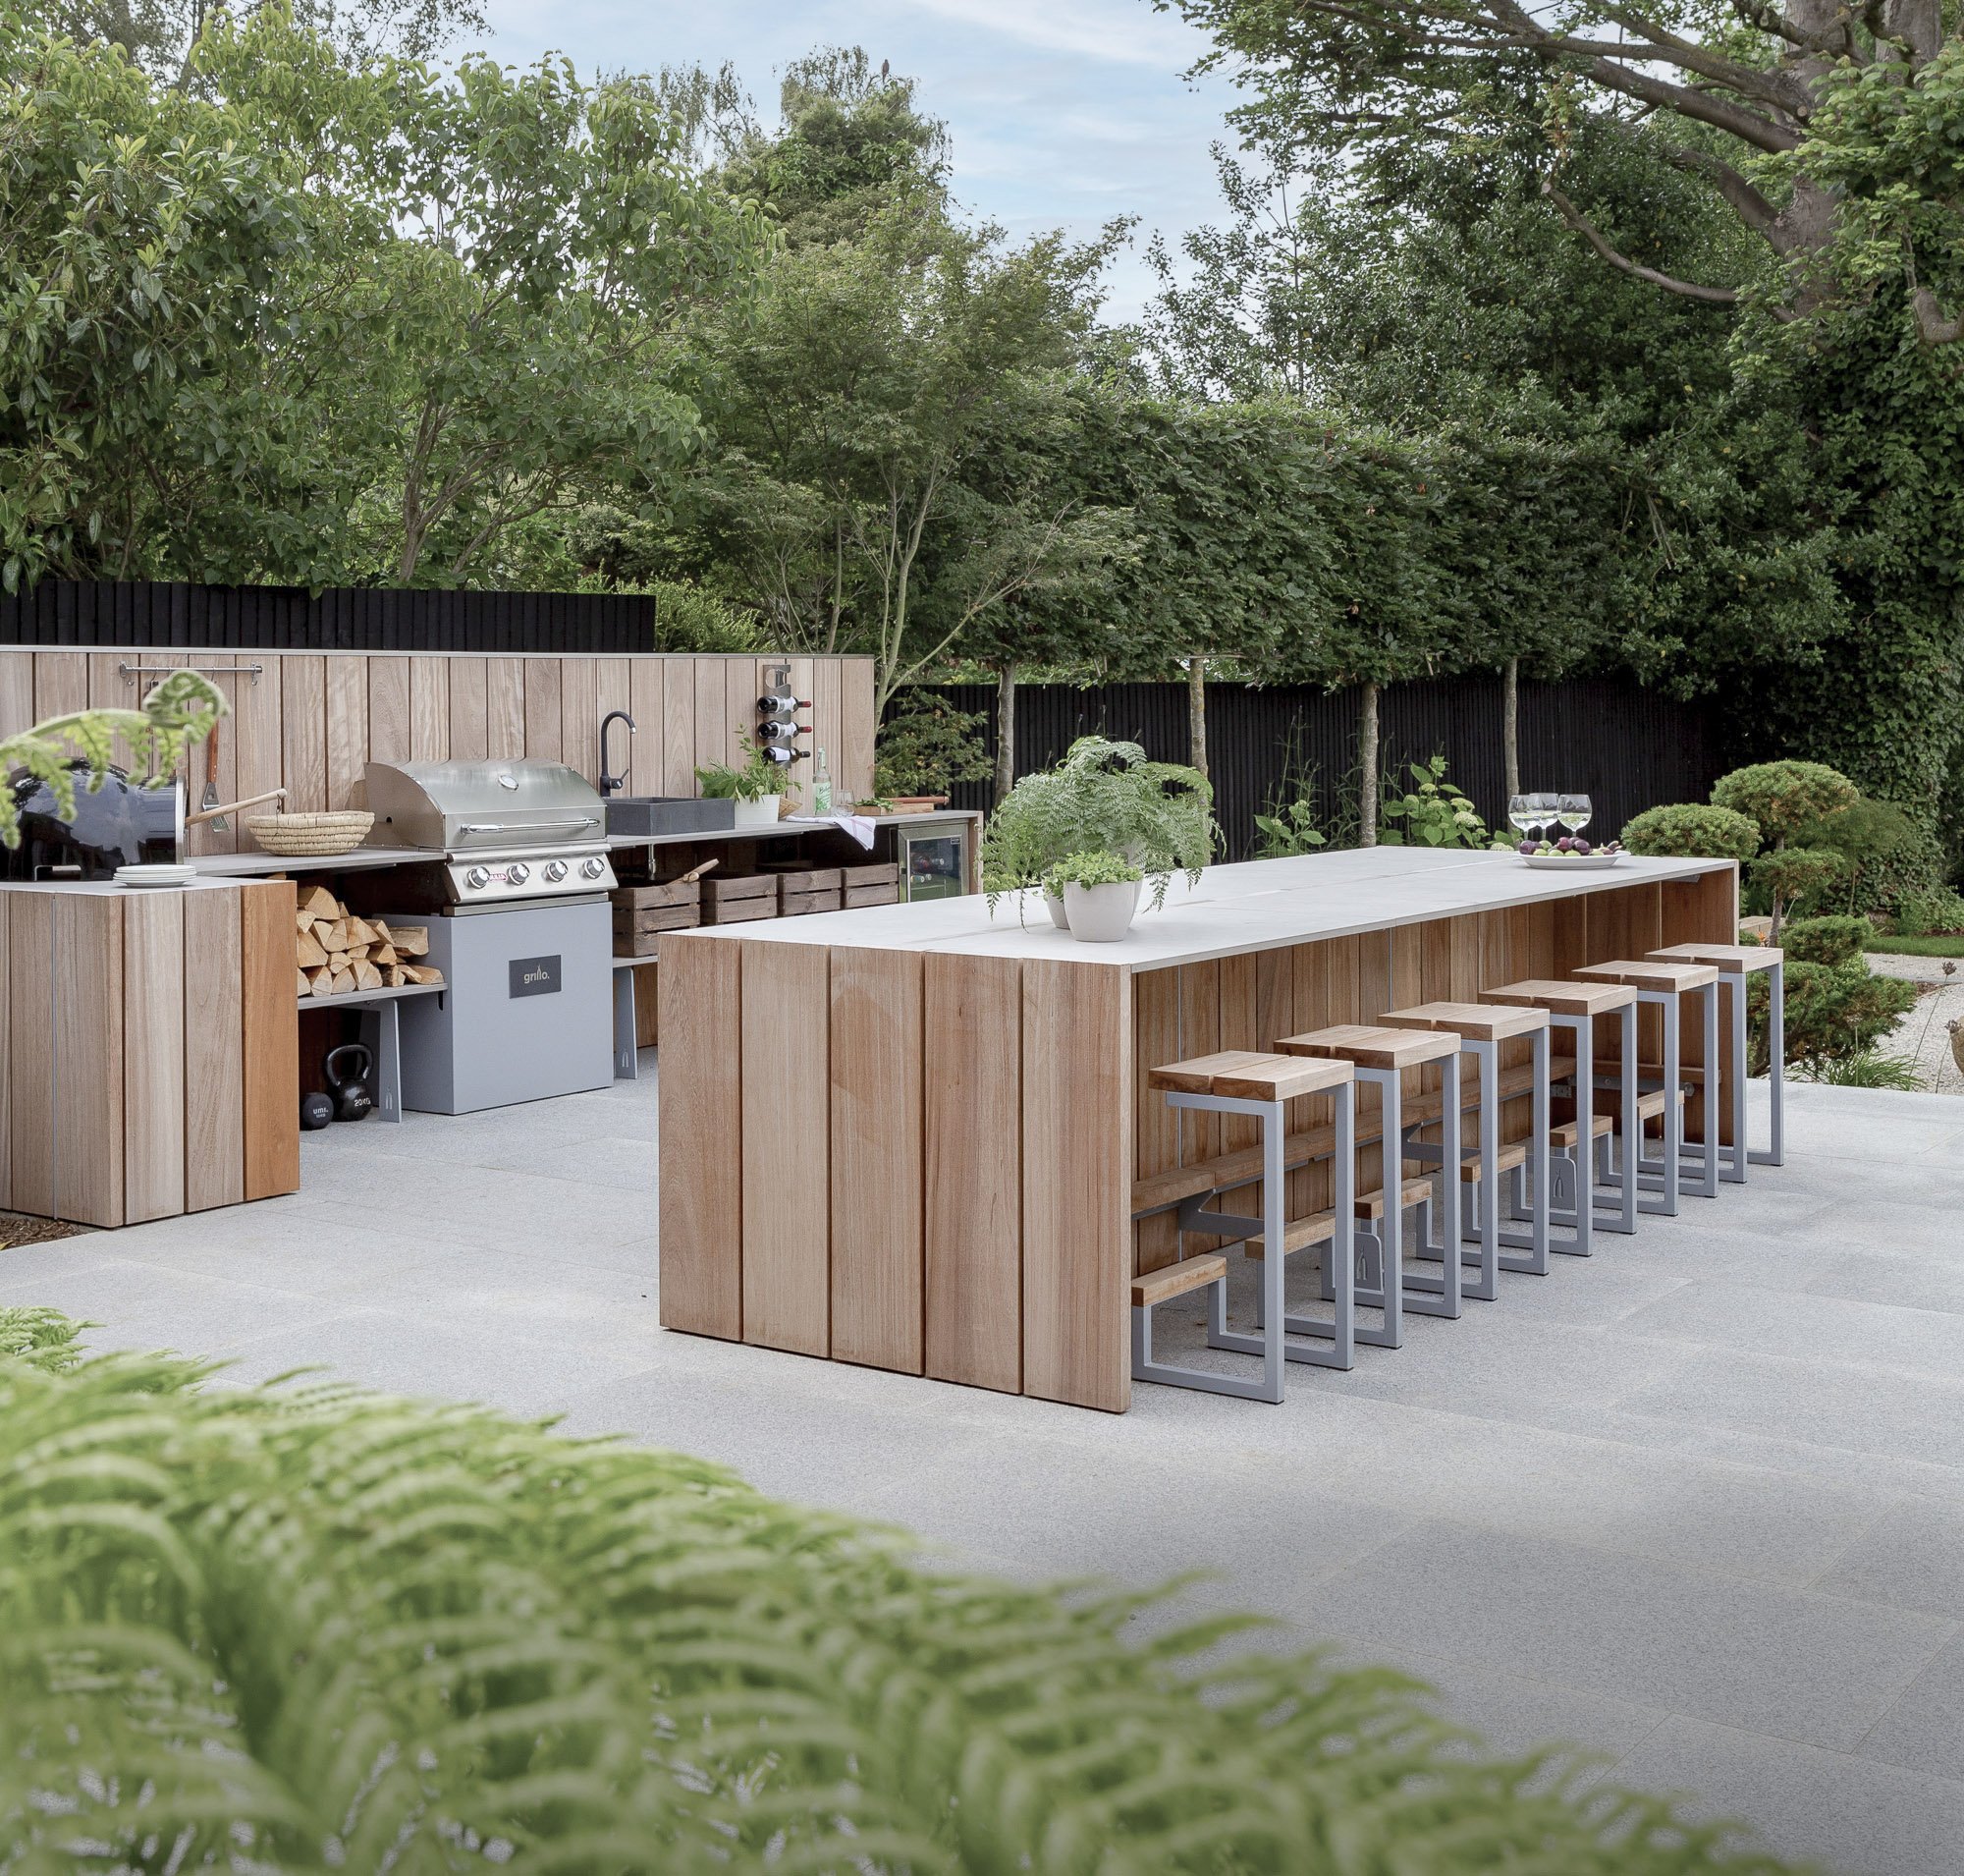 Luxury outdoor kitchen design